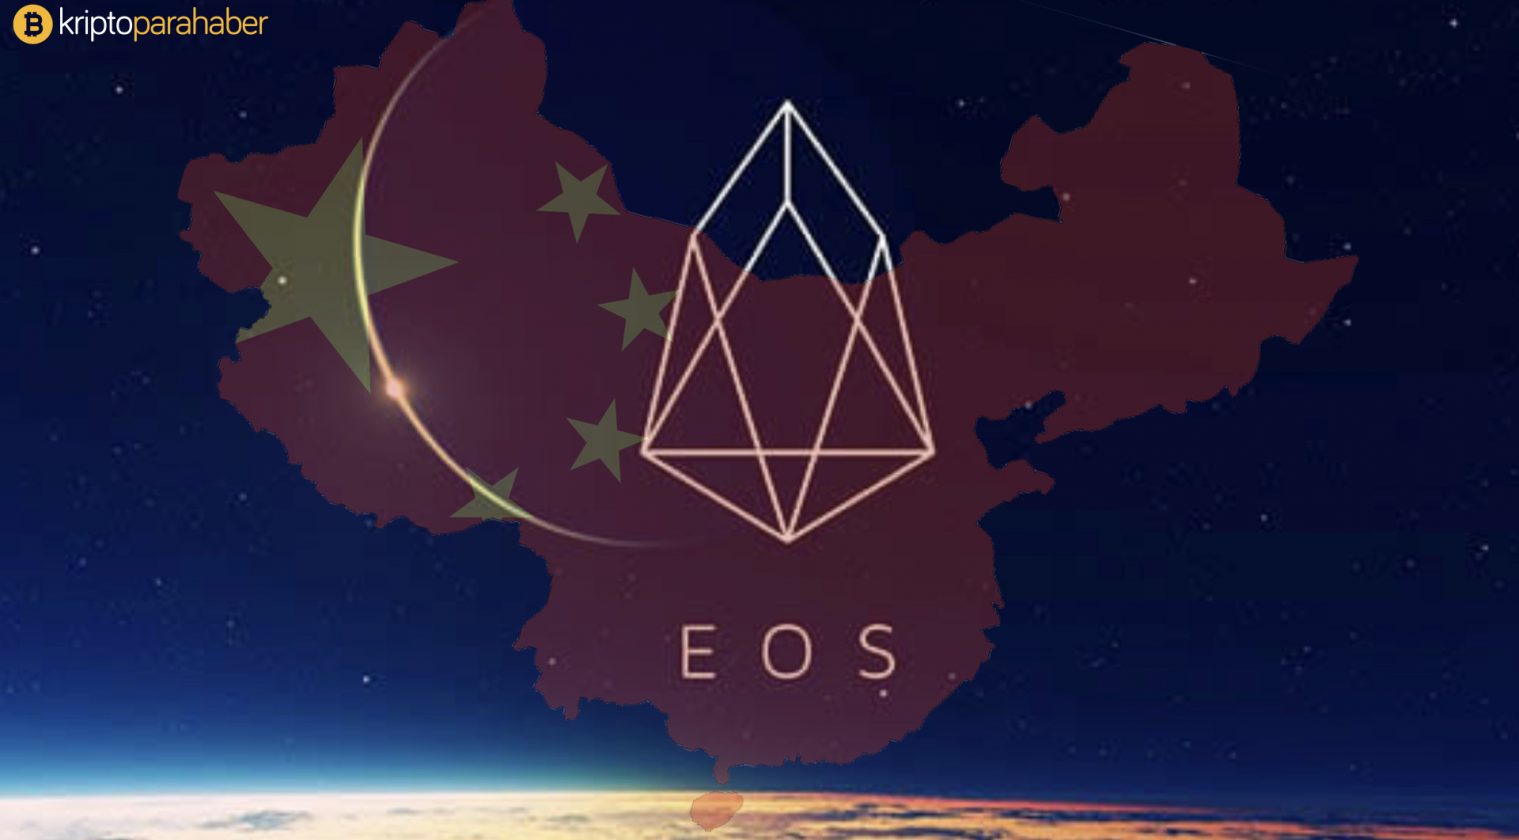 Çin hükümeti tarafından yayımlanan kripto para sıralaması ilk sırayı EOS'a verdi.